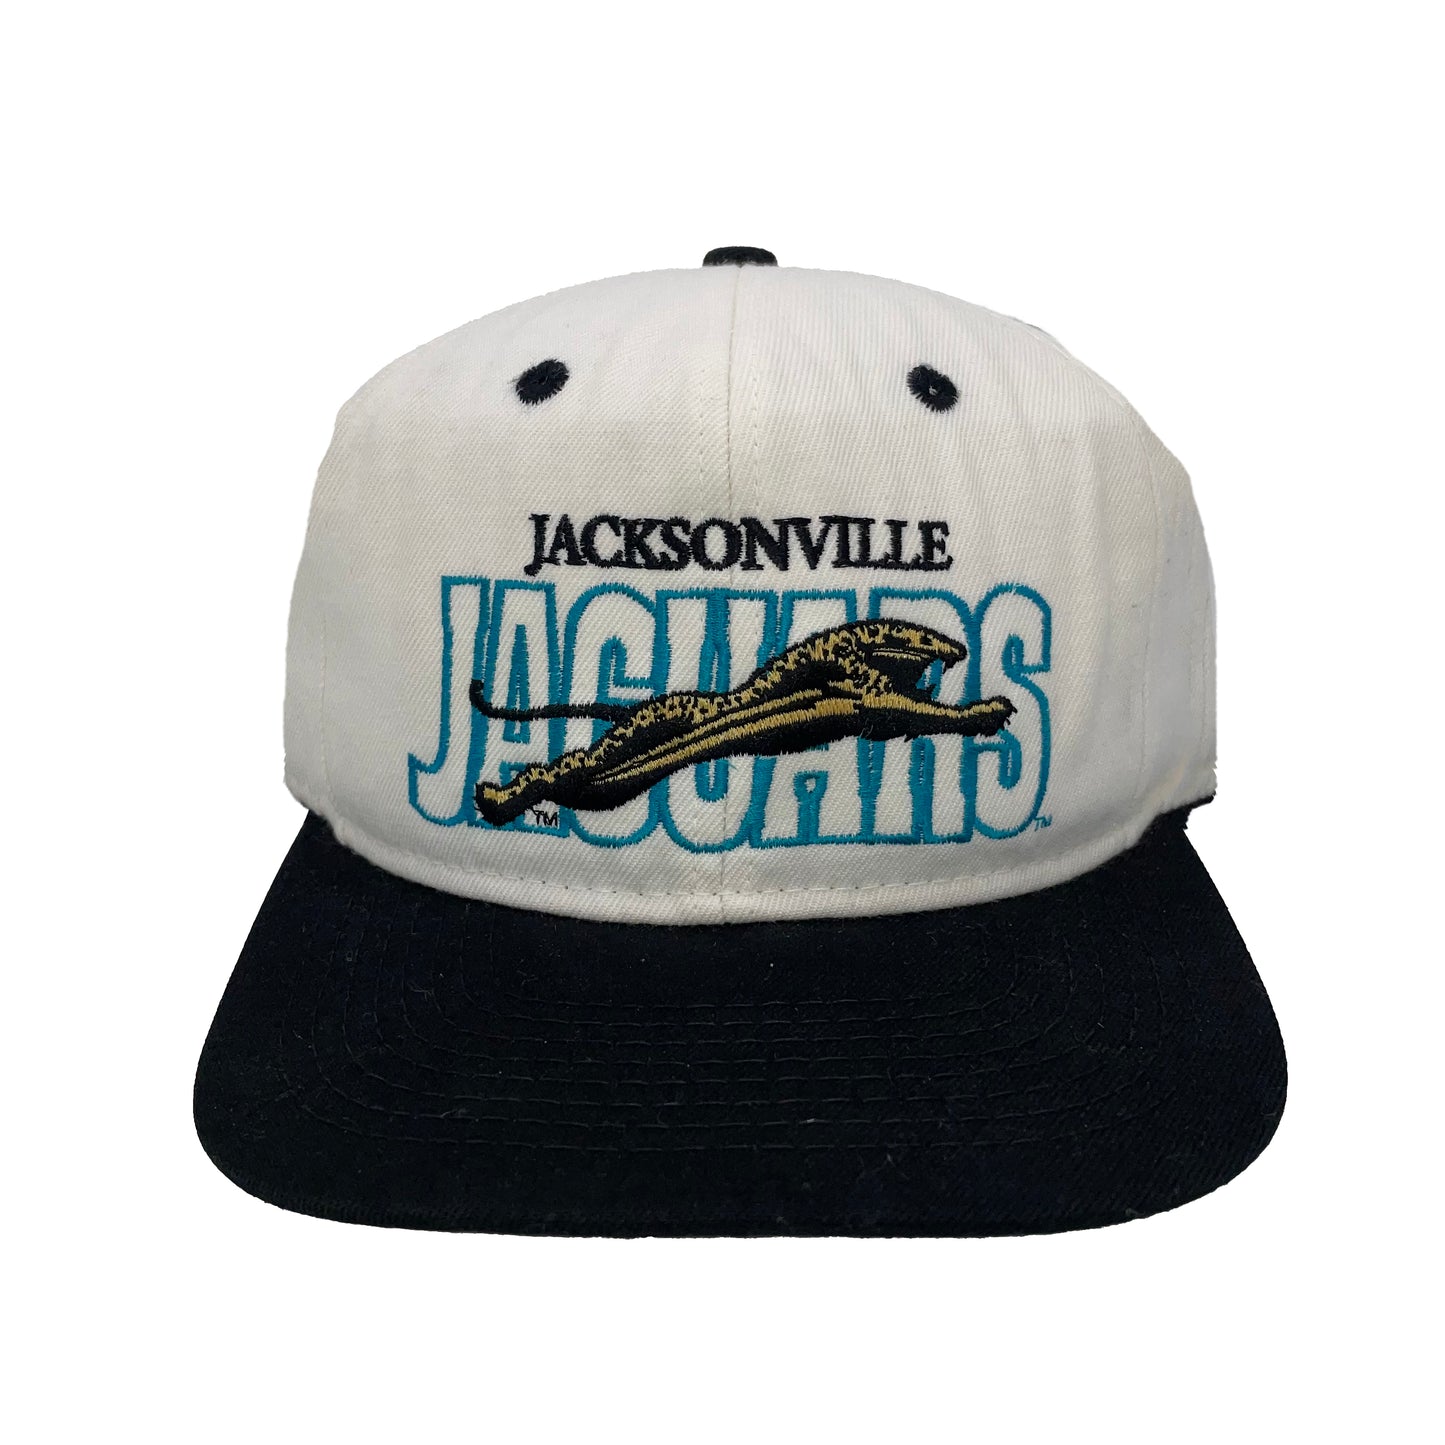 Vintage Jacksonville Jaguars #1 APPAREL hat